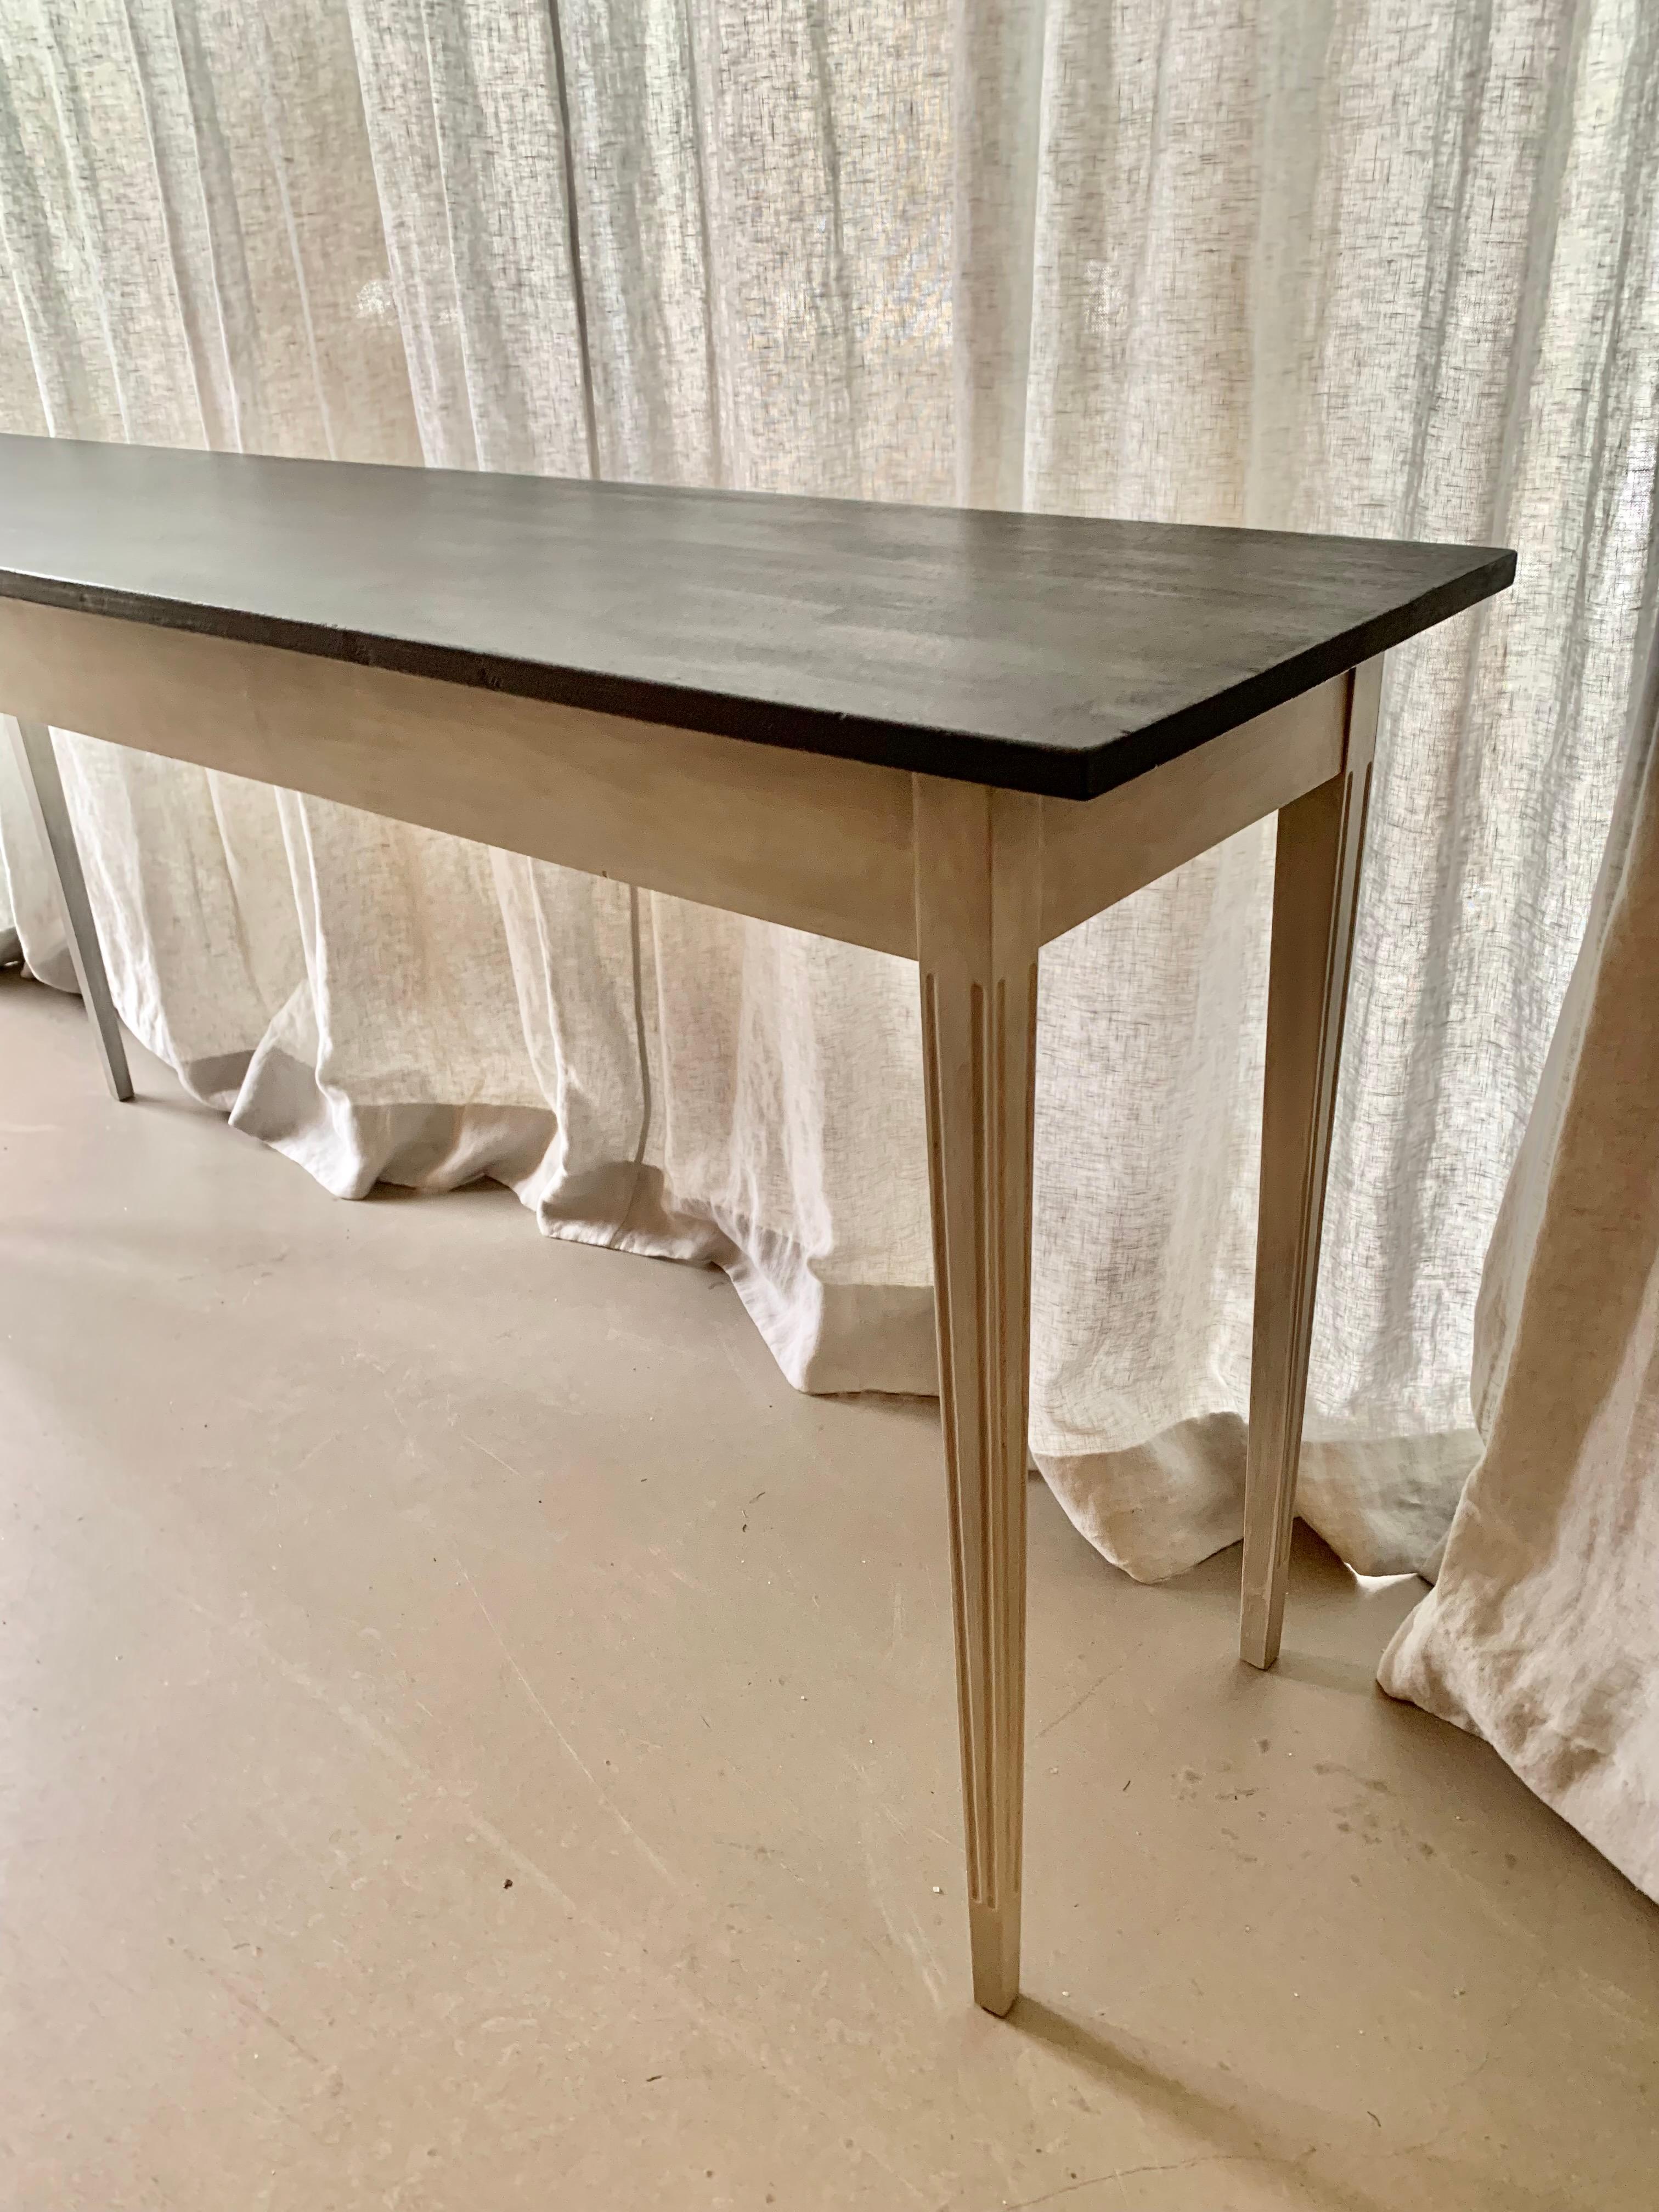 Gracieuse et longue table console de style Gustavien avec des pieds élégamment effilés patinés gris avec des détails sculptés verticalement et un plateau de table peint en noir. Idéal pour le grand couloir ou le salon.
